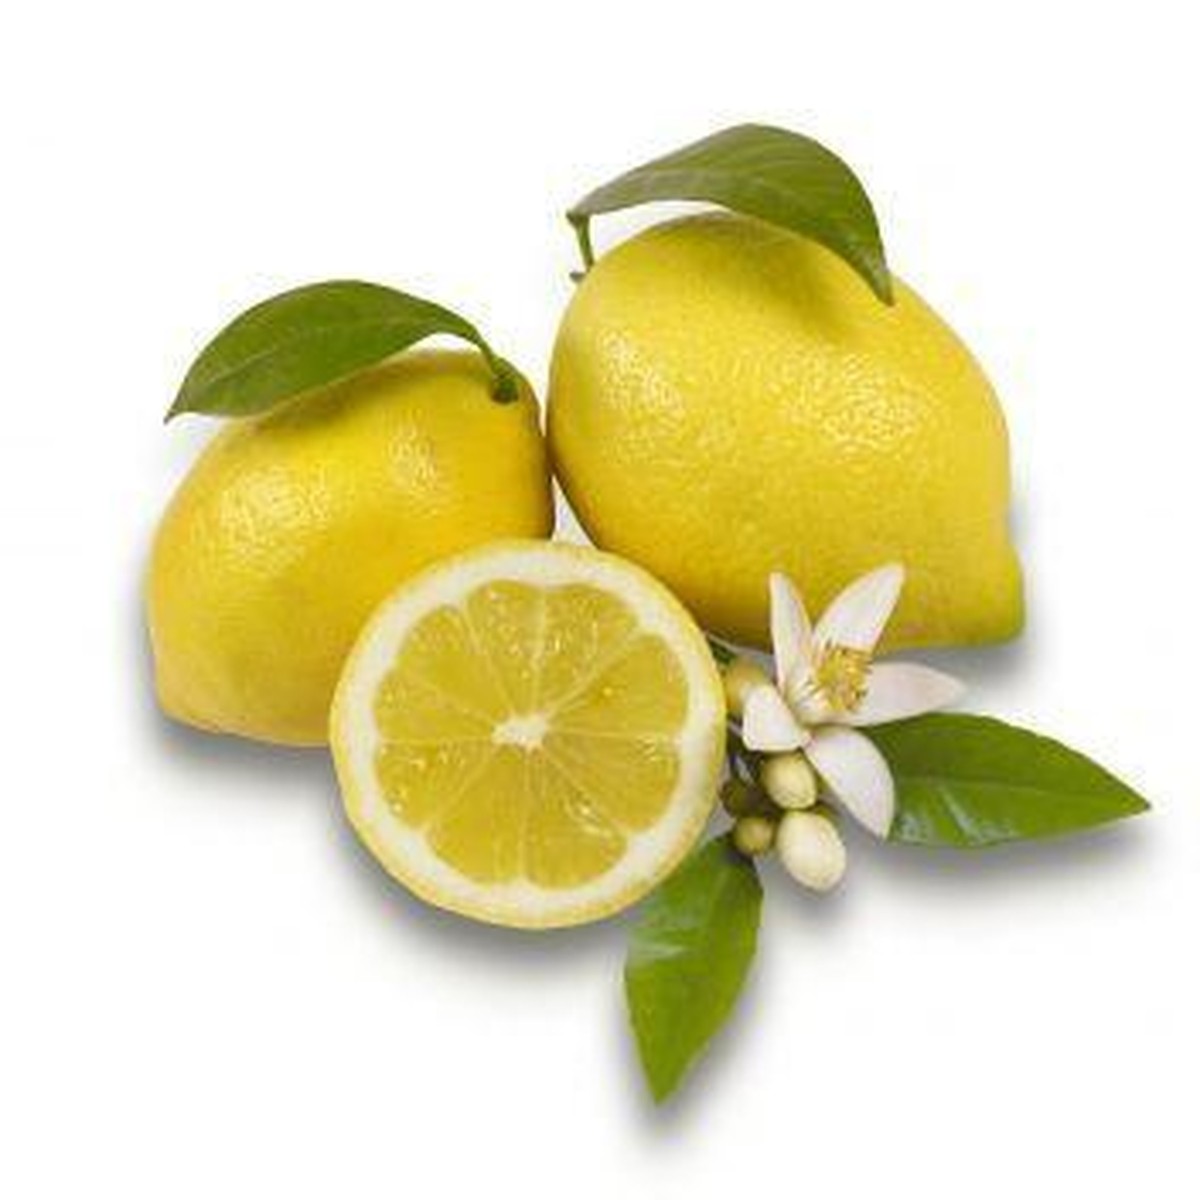   Citrus limon  C22 120/130 T  